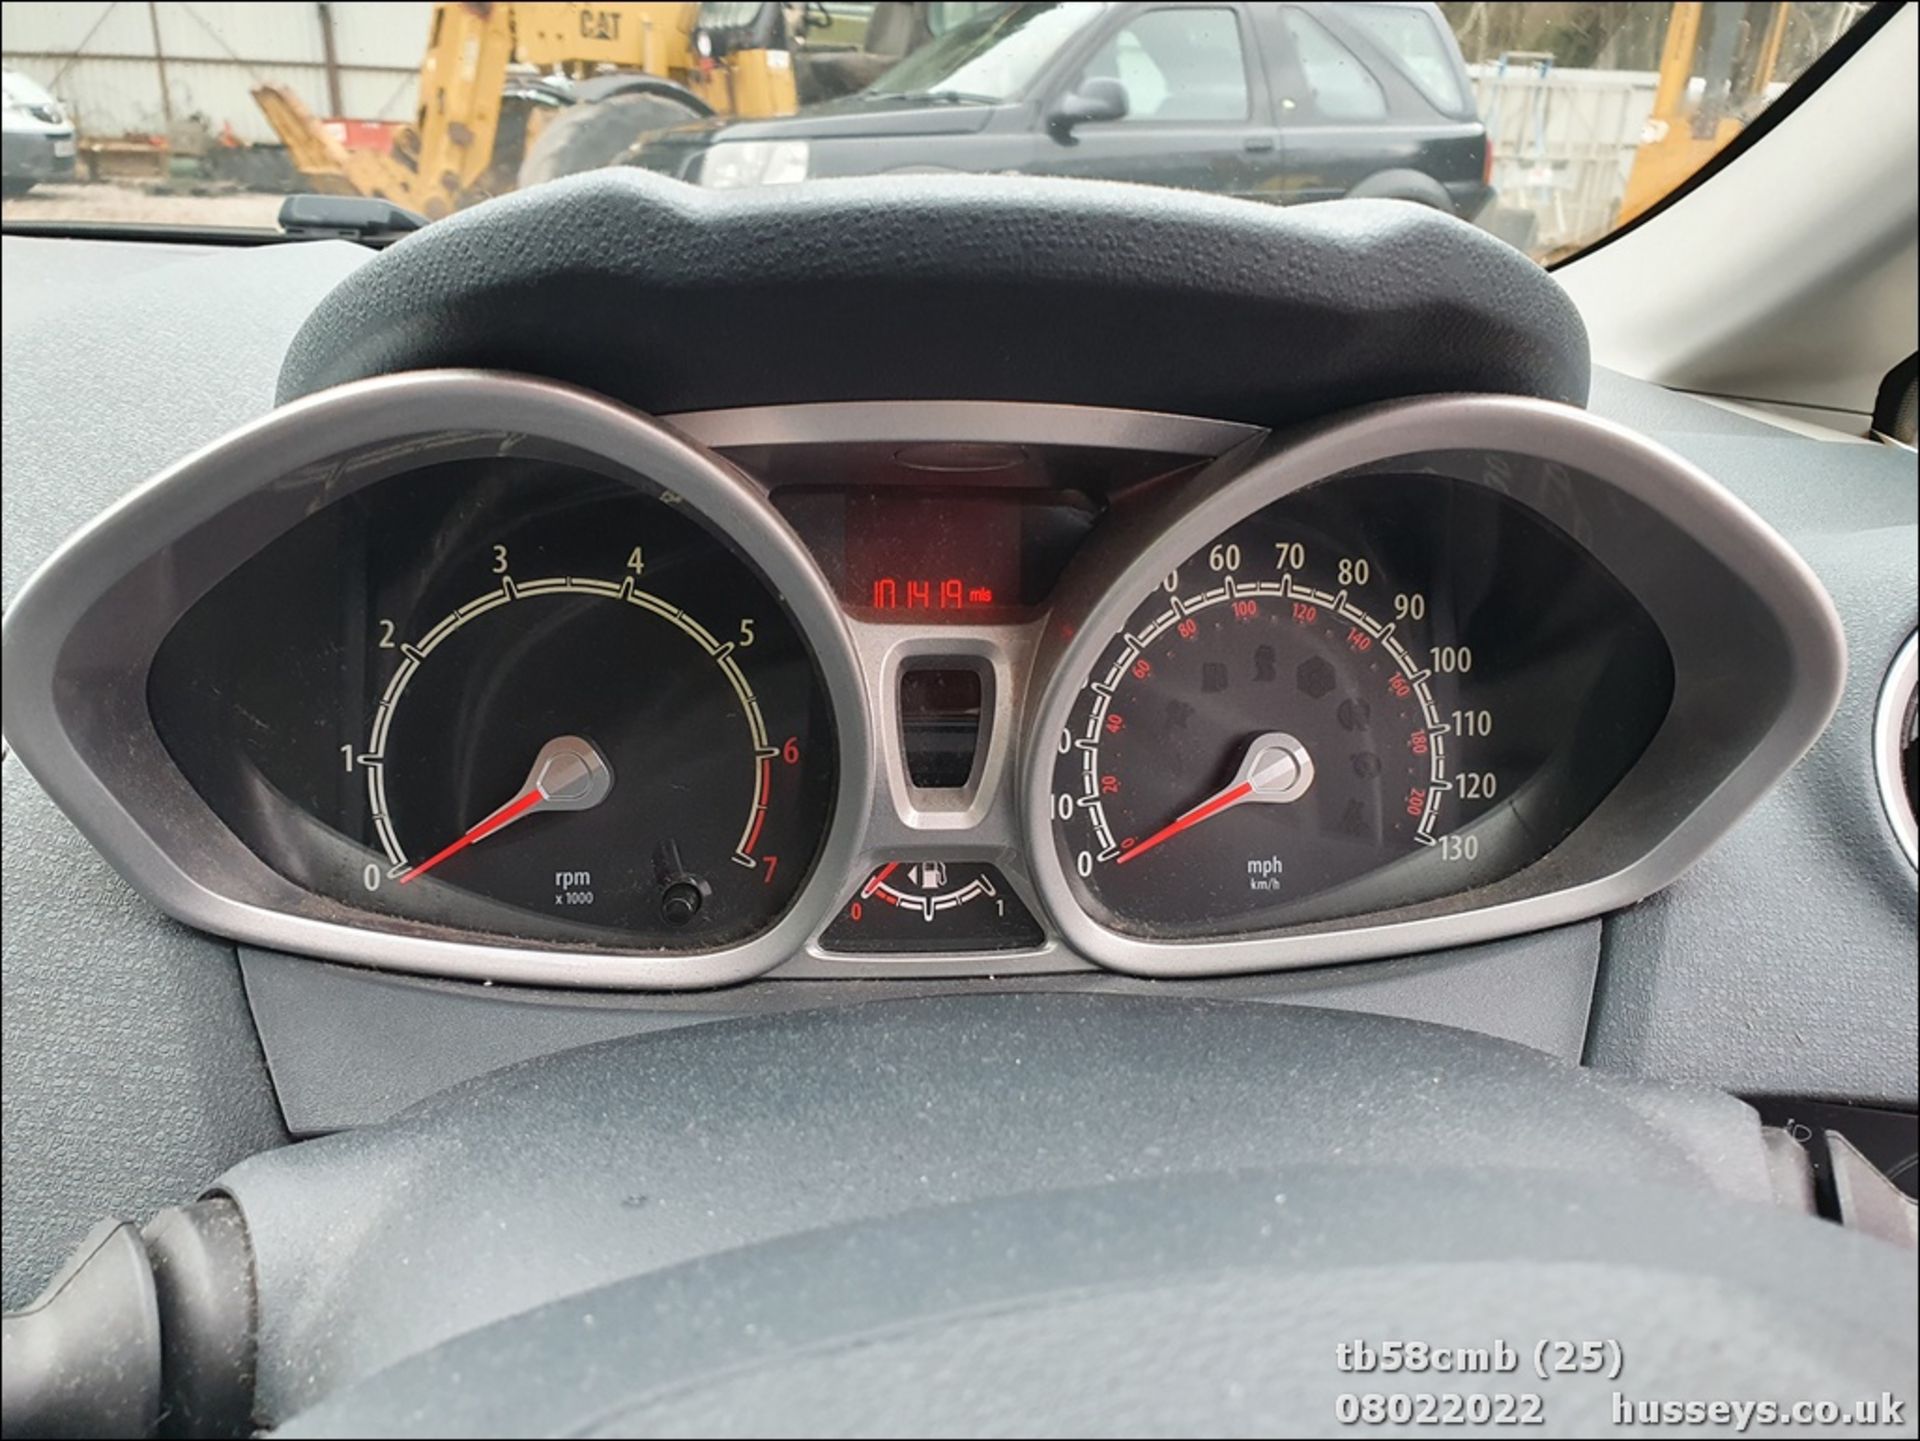 08/58 FORD FIESTA ZETEC 96 - 1388cc 5dr Hatchback (Red, 101k) - Image 25 of 26